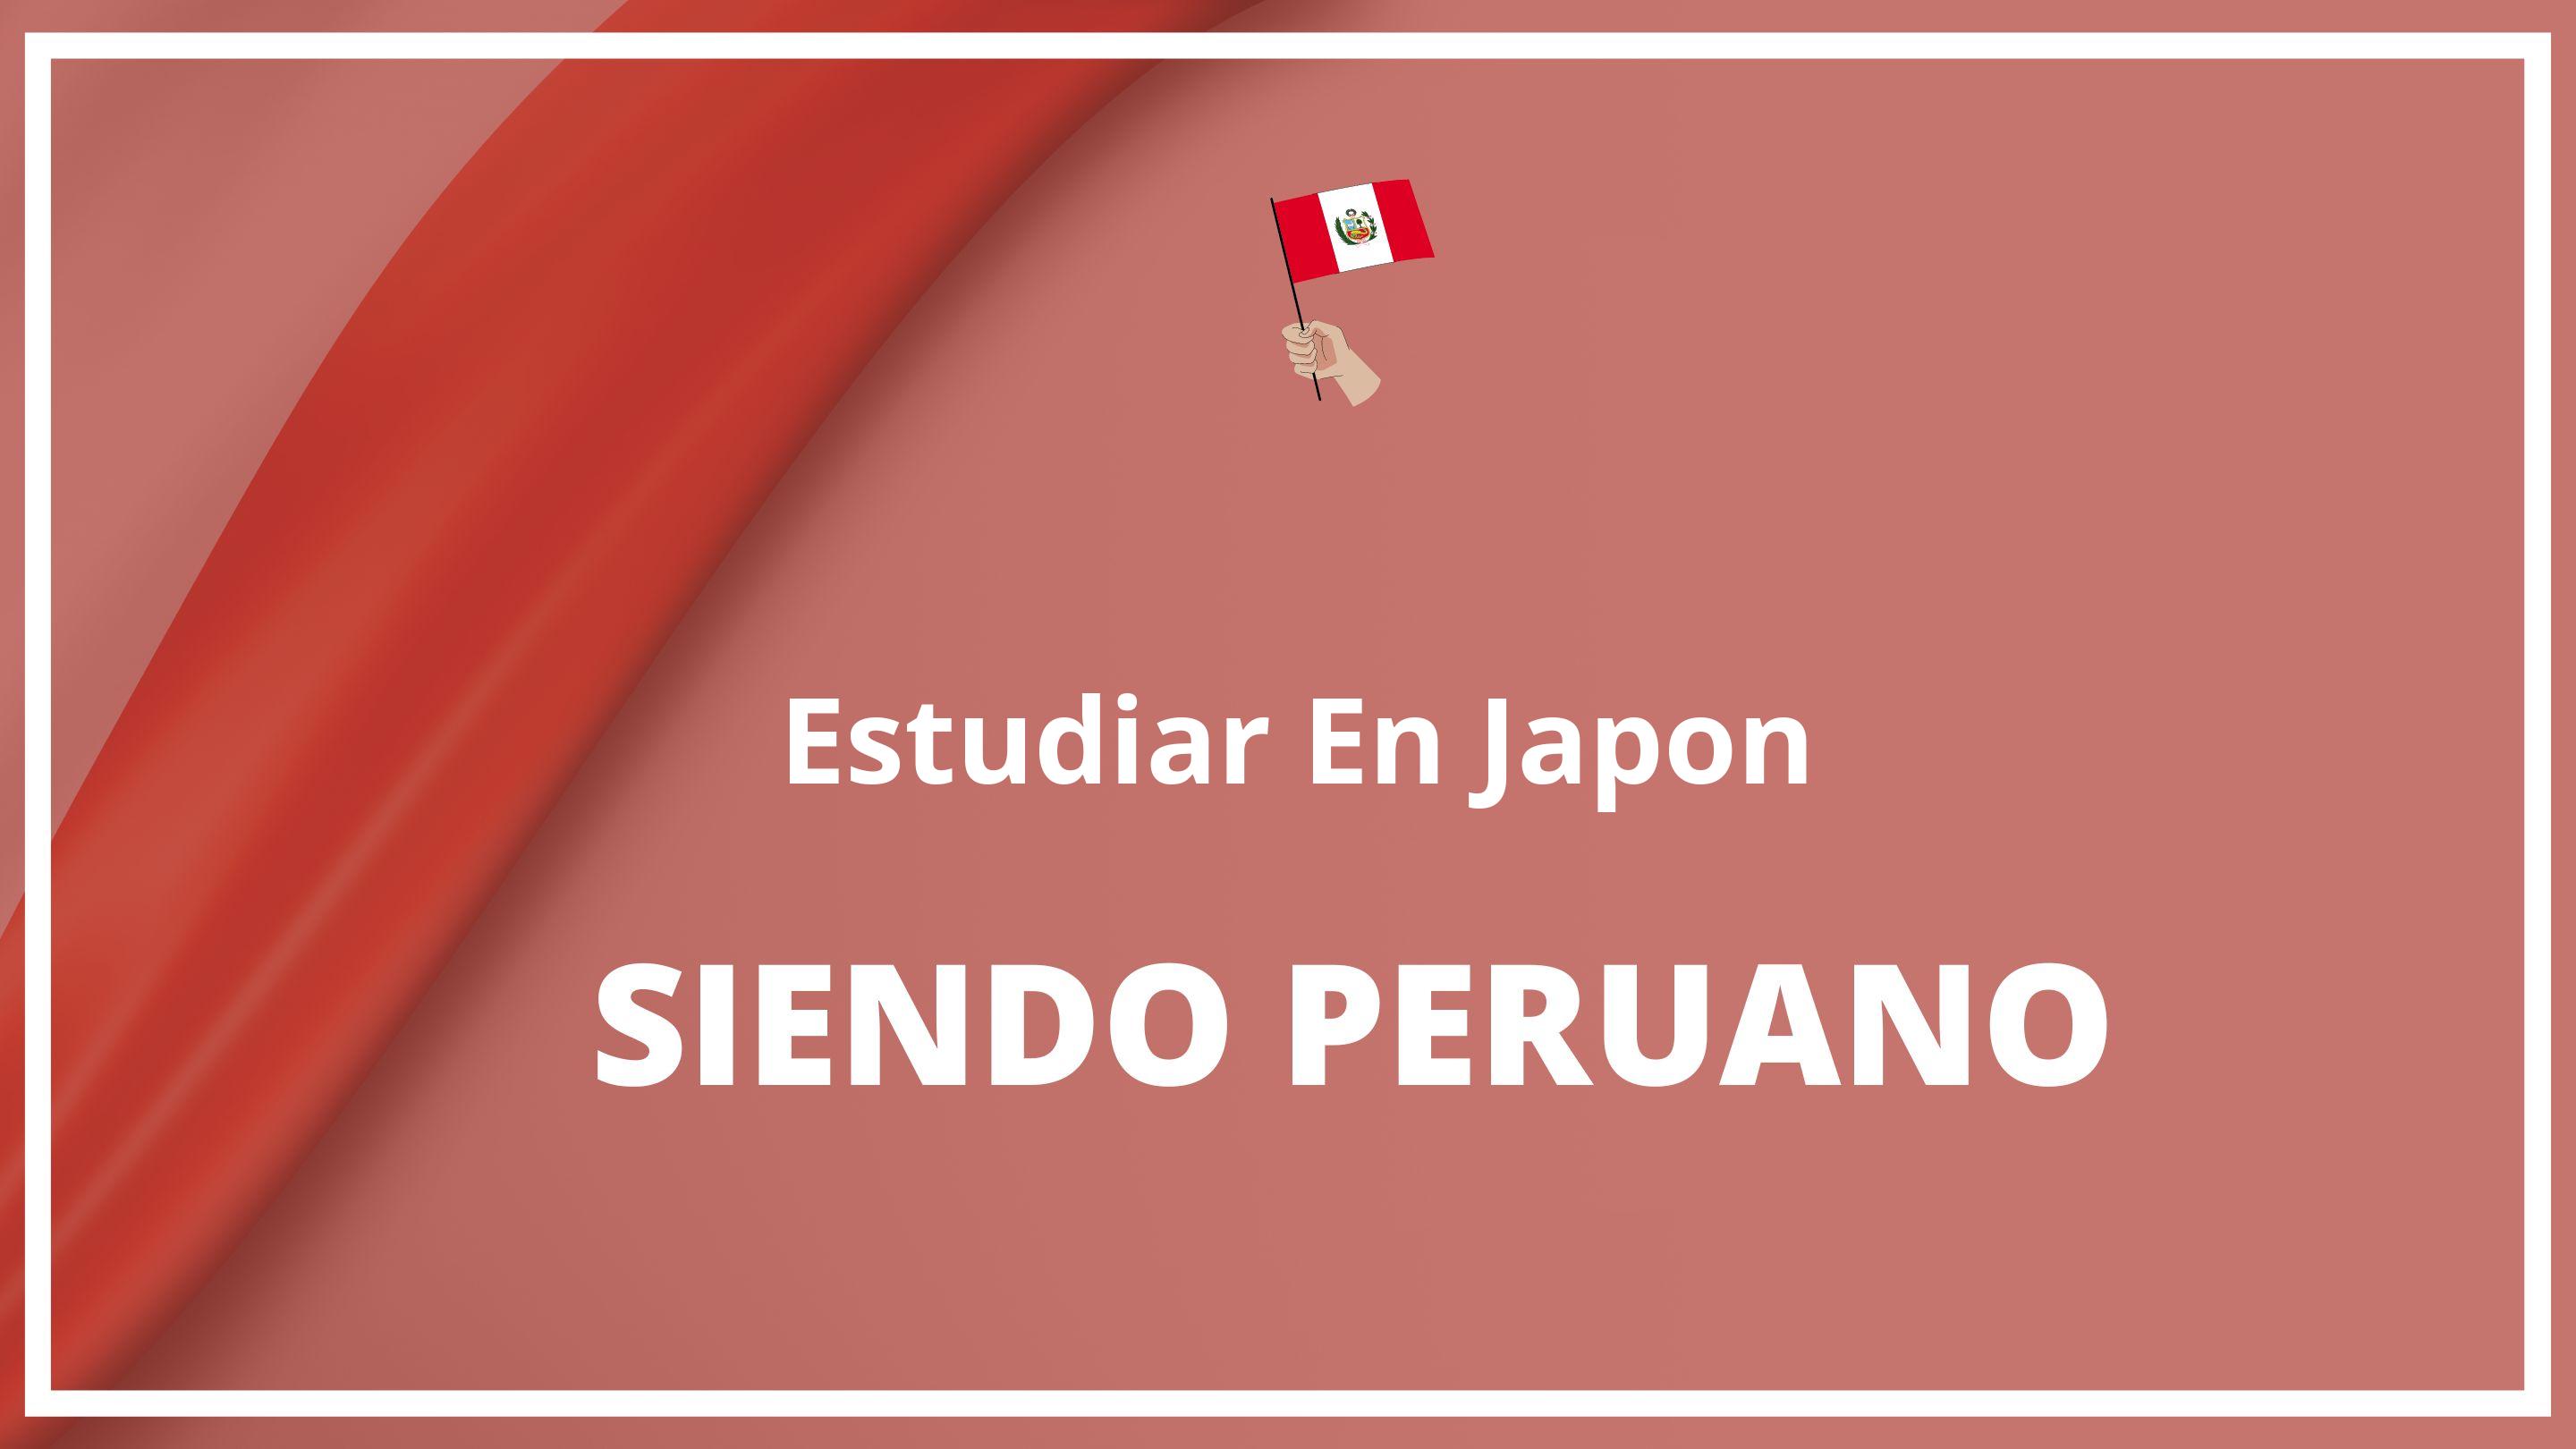 Como estudiar en japon siendo peruano